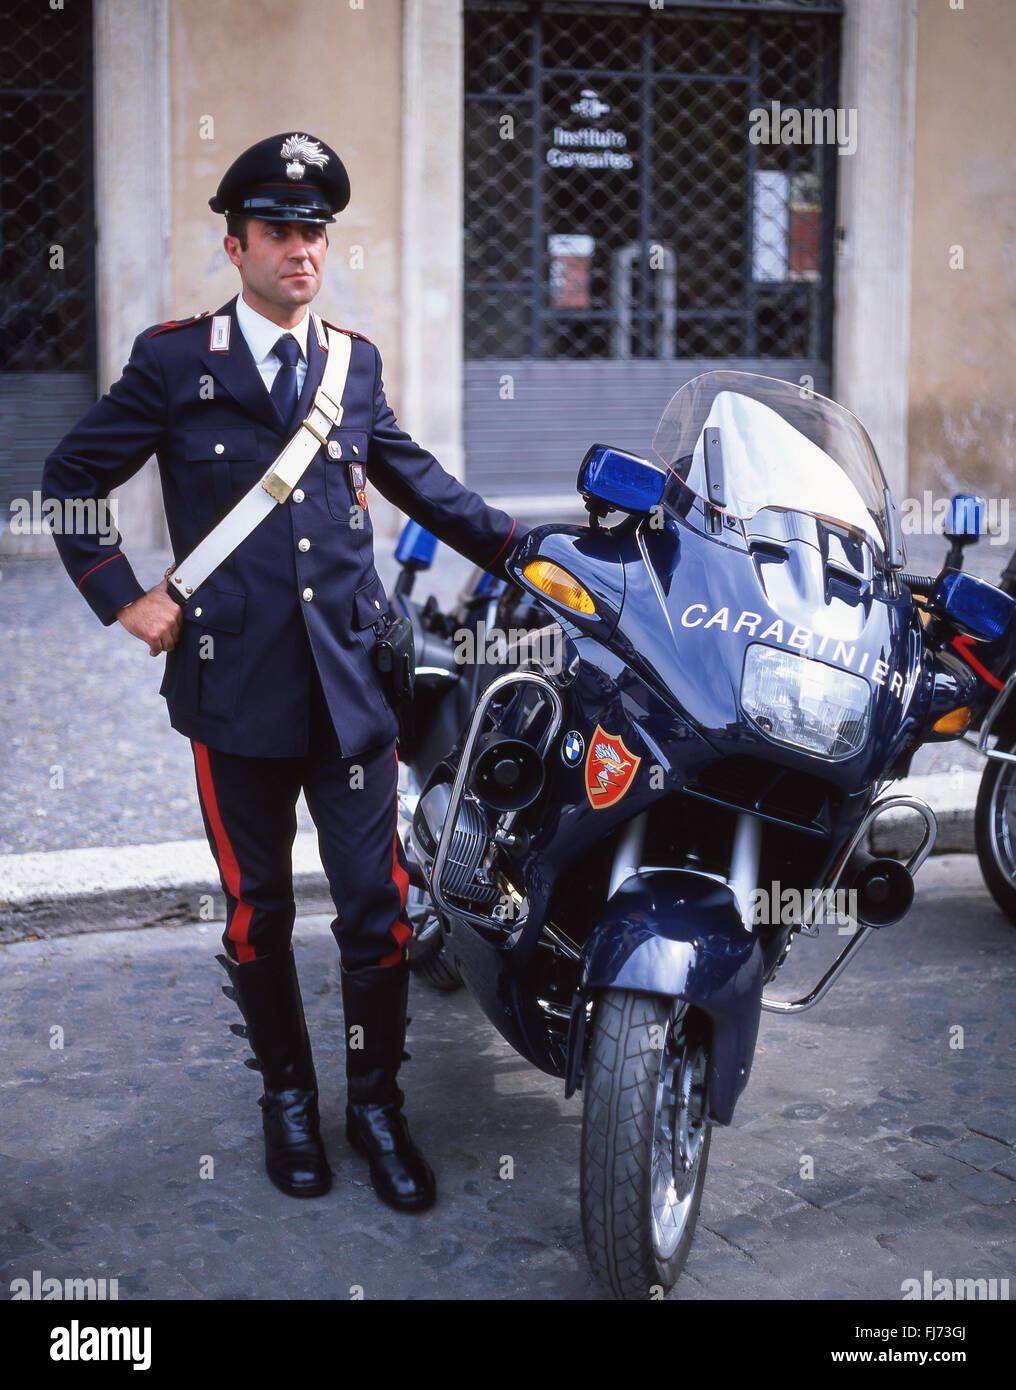 Policier italien (Carabinieri) debout à moto, Rome (Roma), région du Latium, Italie Banque D'Images